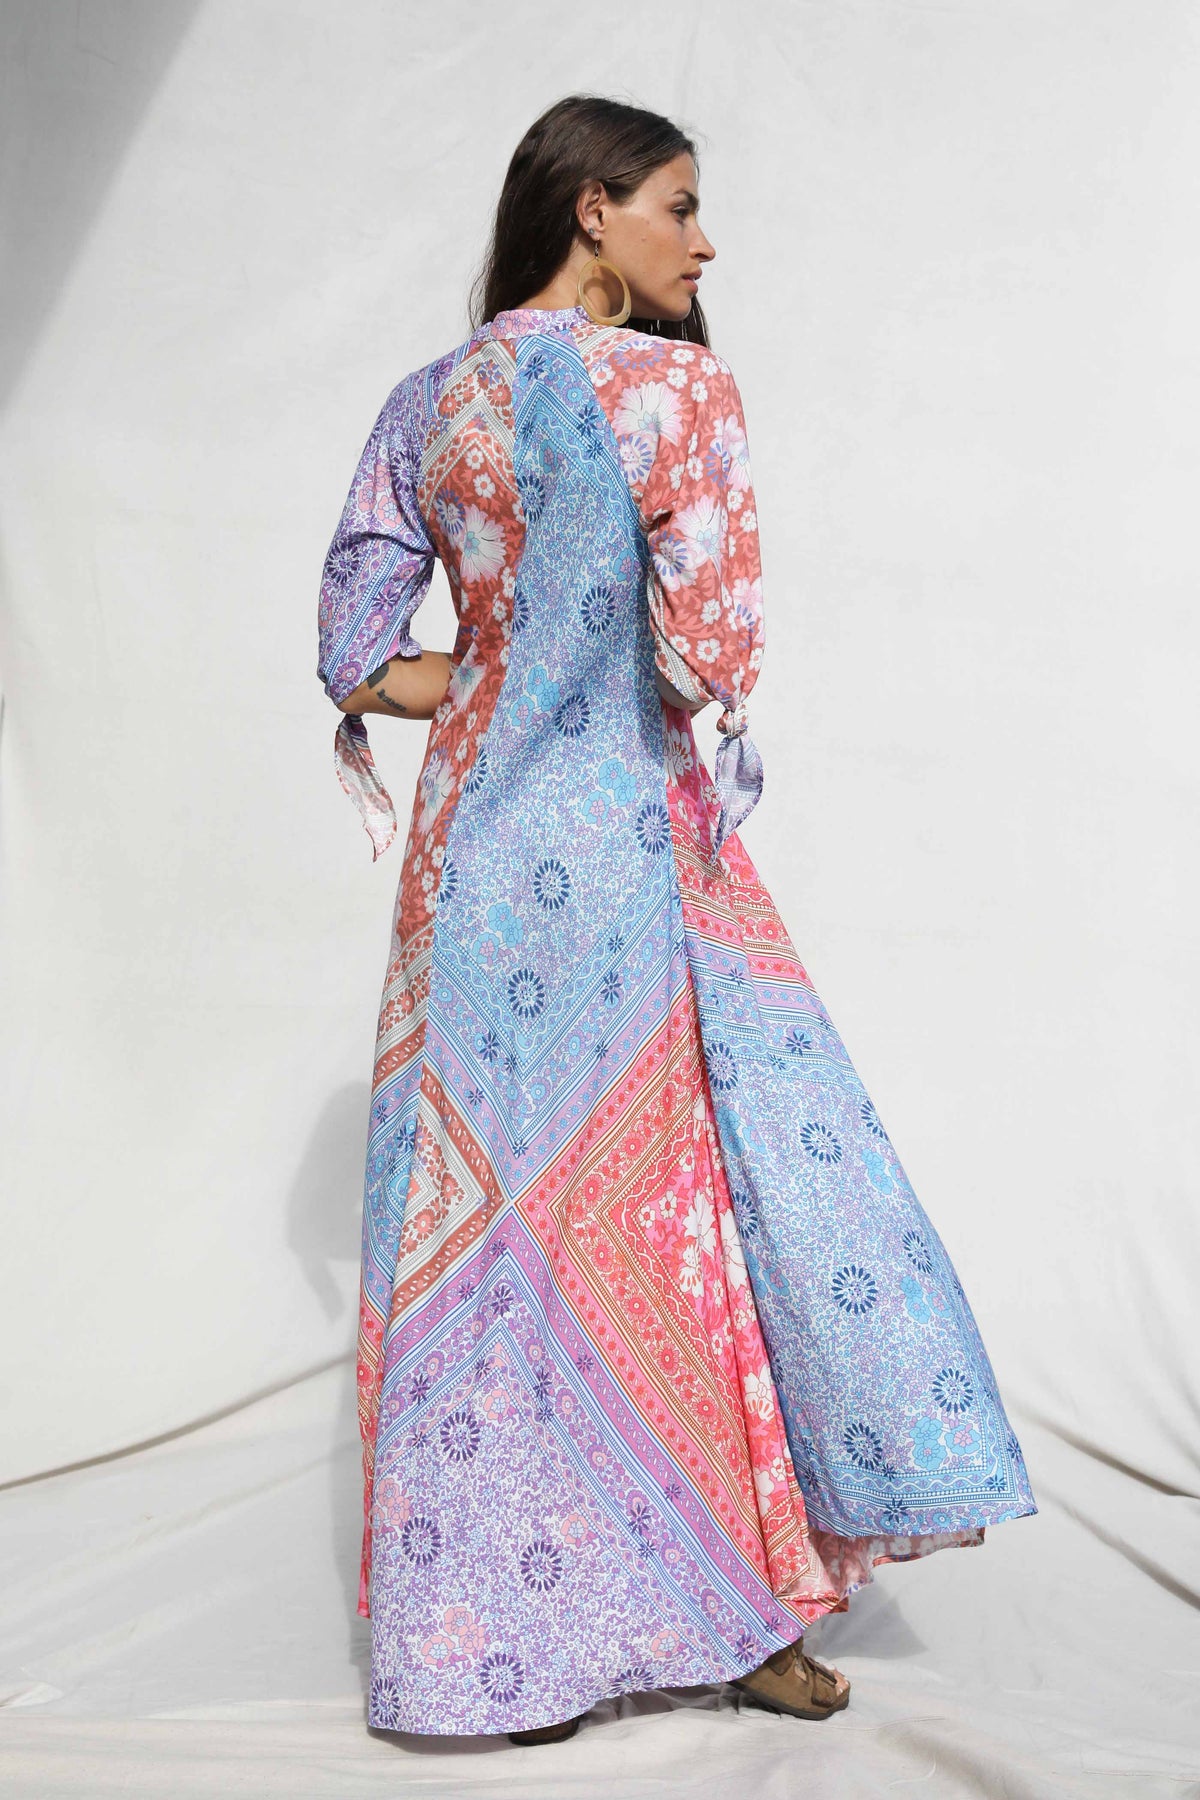 Fairytale Hyacinth Gown